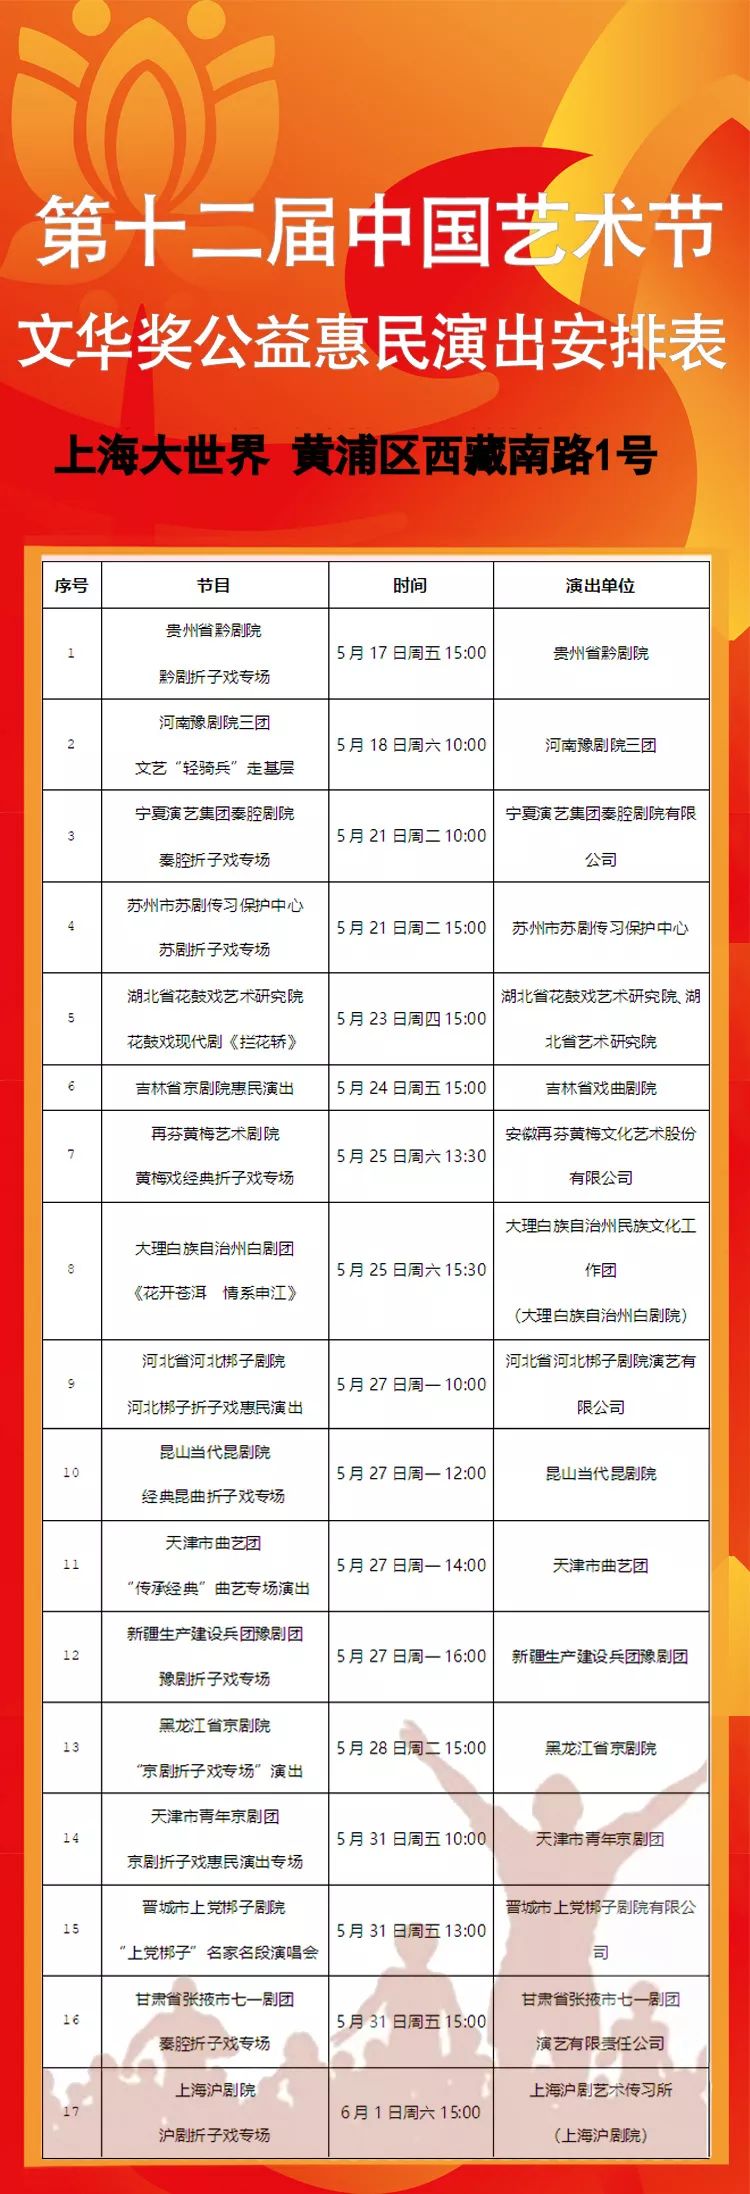 2019中国艺术节公益惠民活动安排 免费预约方式